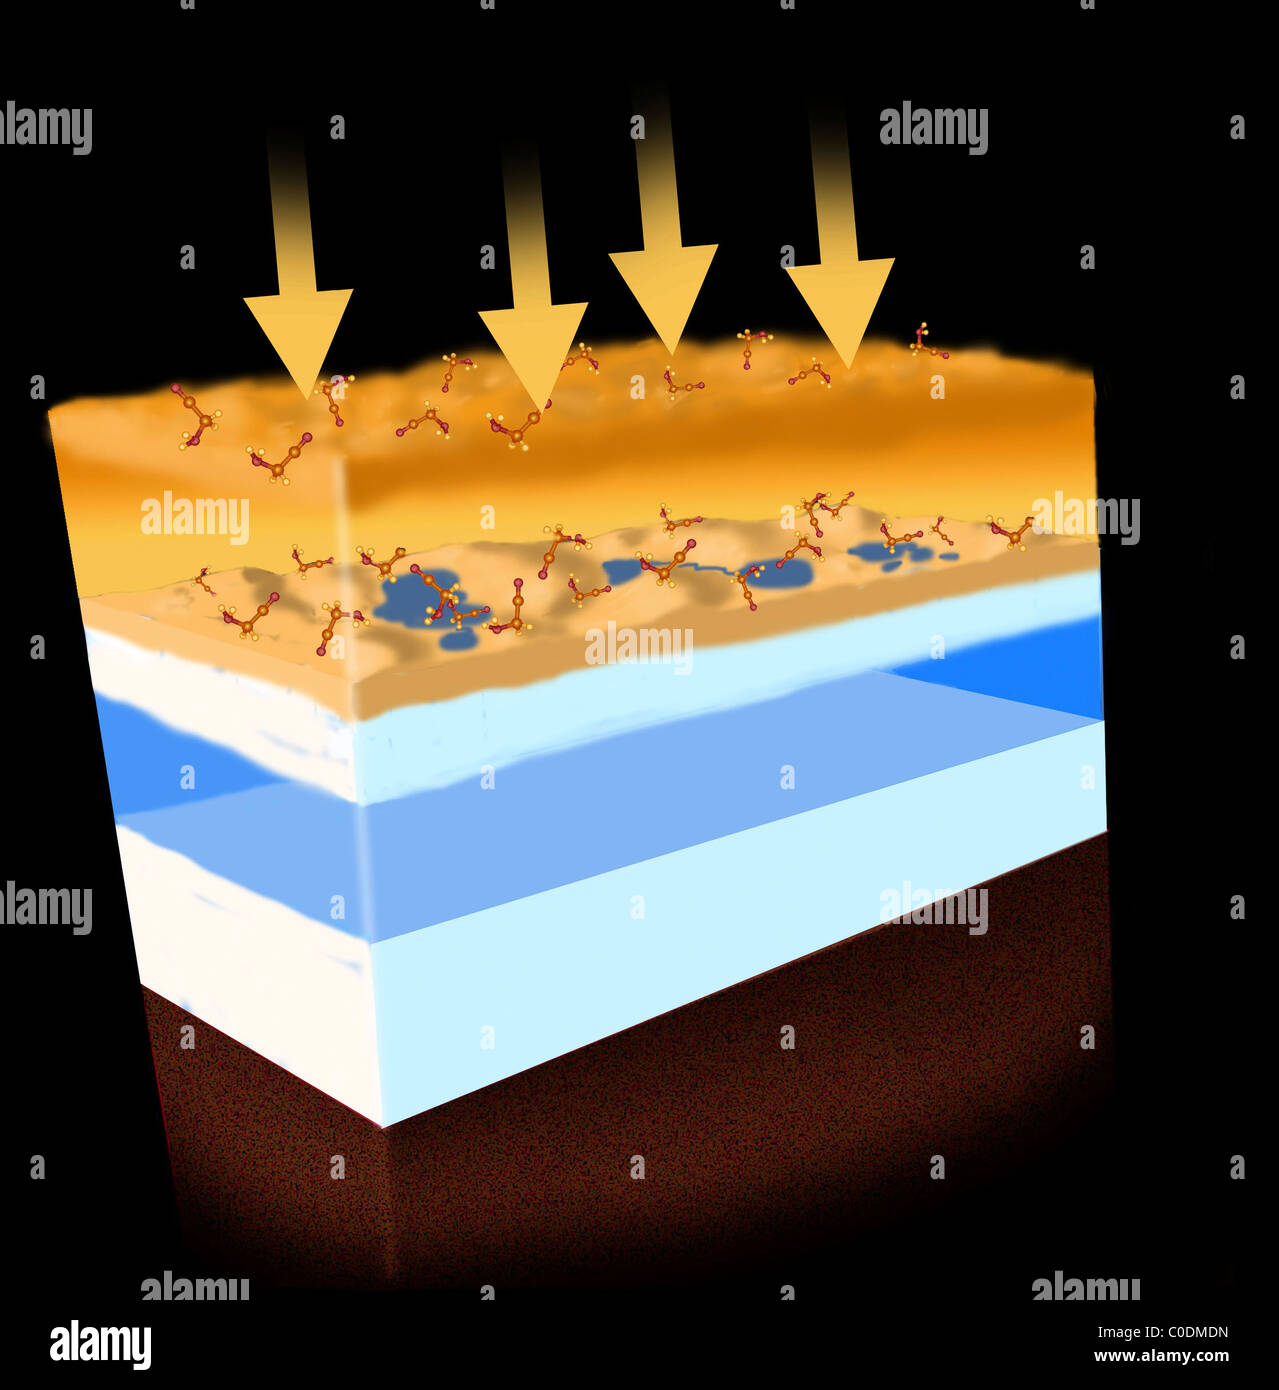 Uno schema che mostra come energia sotto forma di irraggiamento solare crea molecole organiche in atmosfera di Titan. Foto Stock